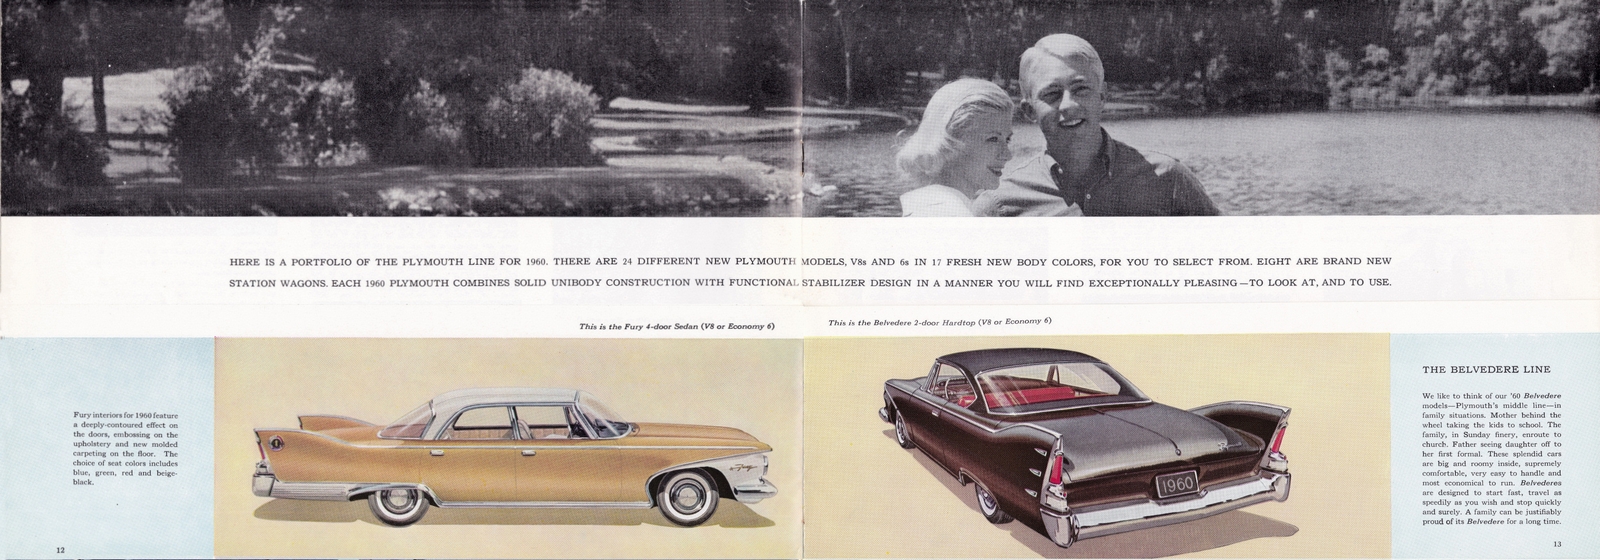 n_1960 Plymouth Prestige (Cdn)-12-13.jpg